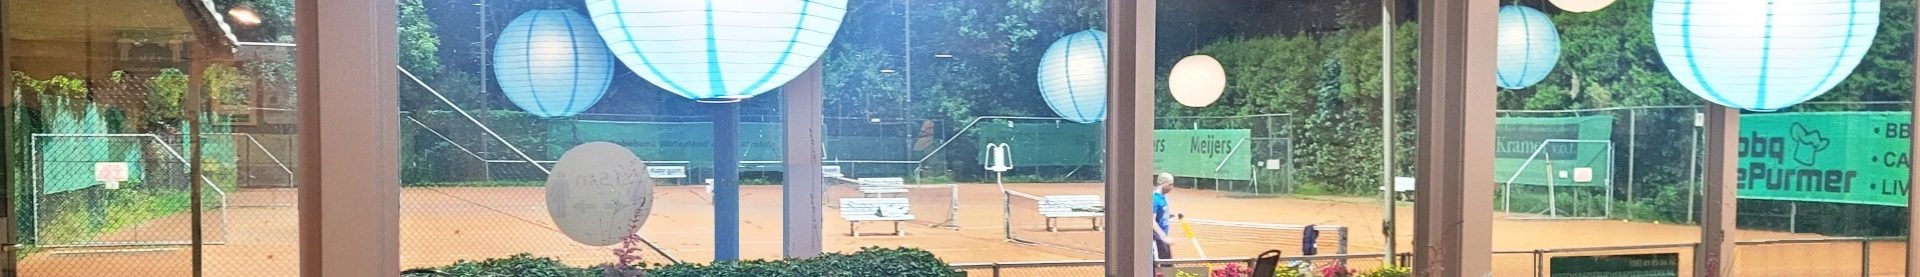 Tennispark klaar voor nieuwe seizoen